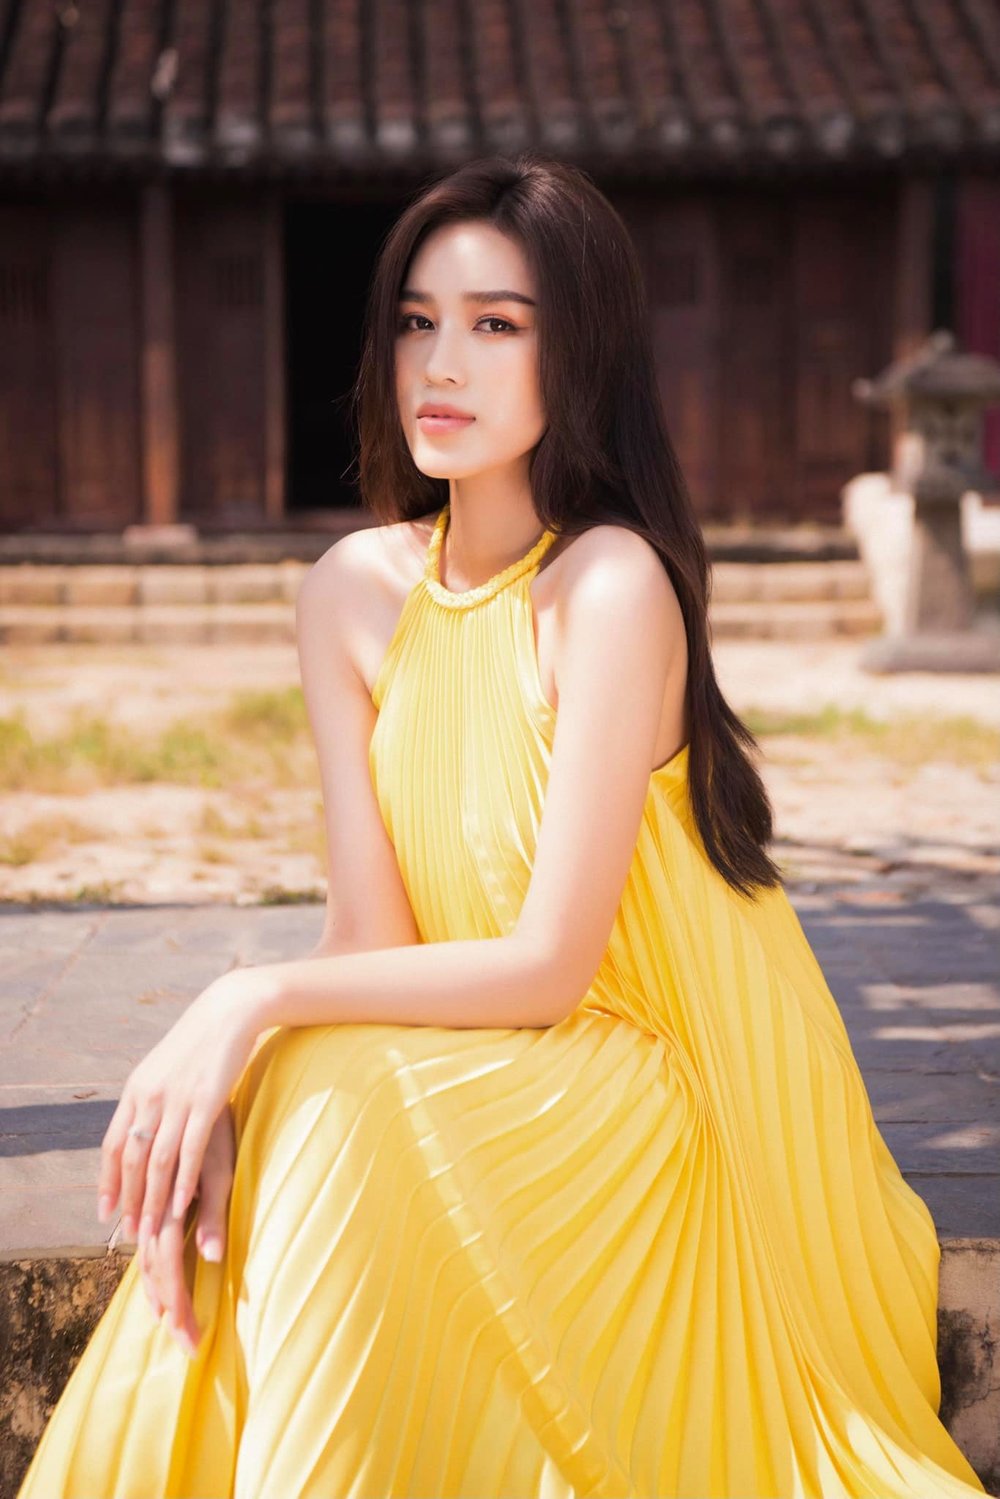  
Đỗ Thị Hà sẽ đại diện Việt Nam thi đấu tại đấu trường nhan sắc quốc tế Miss World 2021 vào ngày 20/11 sắp tới. (Ảnh: FBNV)